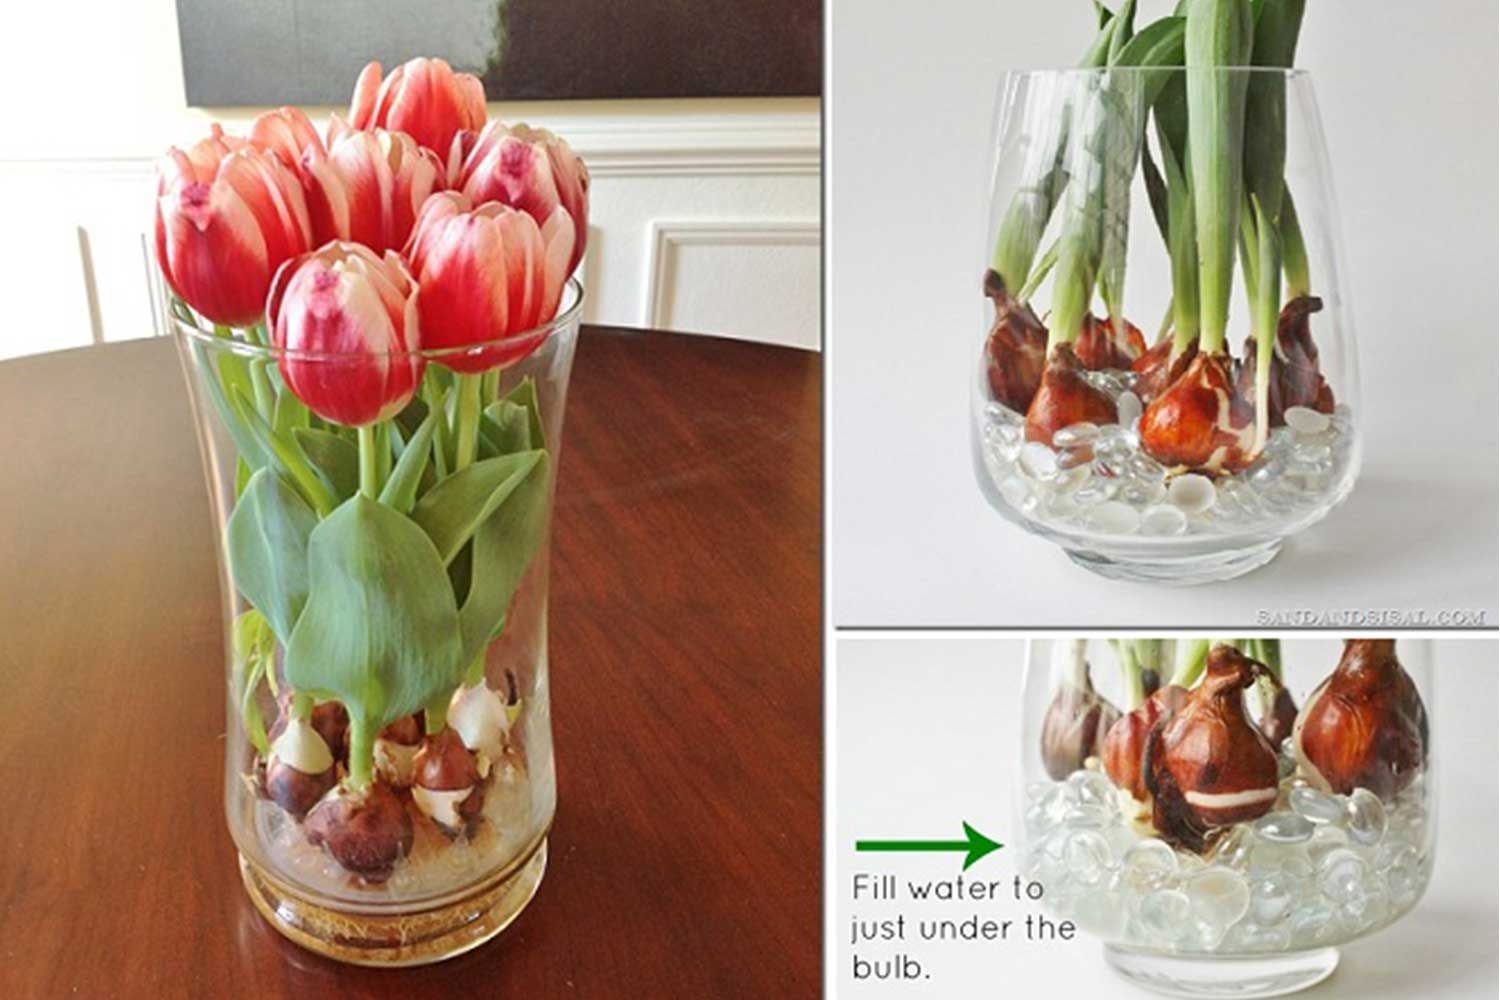 Выращивание тюльпанов дома. Тюльпаны в стеклянной вазе. Тюльпаны в вазе с луковицей. Луковицы тюльпанов в стеклянной вазе. Тюльпаны дома в горшке.